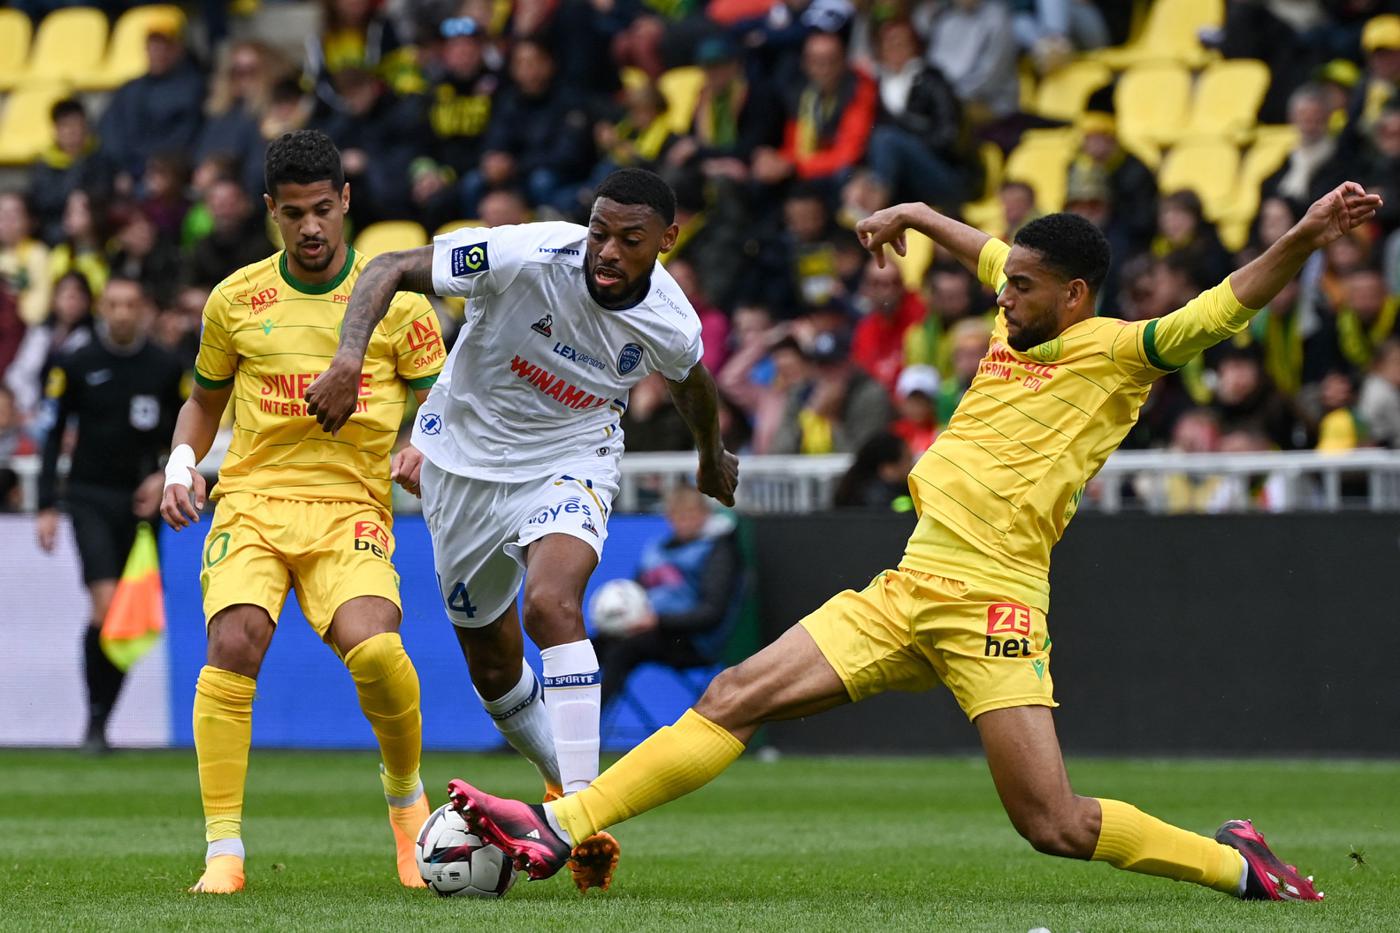 Nantes - Troyes - 2:2. Französische Meisterschaft, Achtelfinale 32. Spielbericht, Statistik.